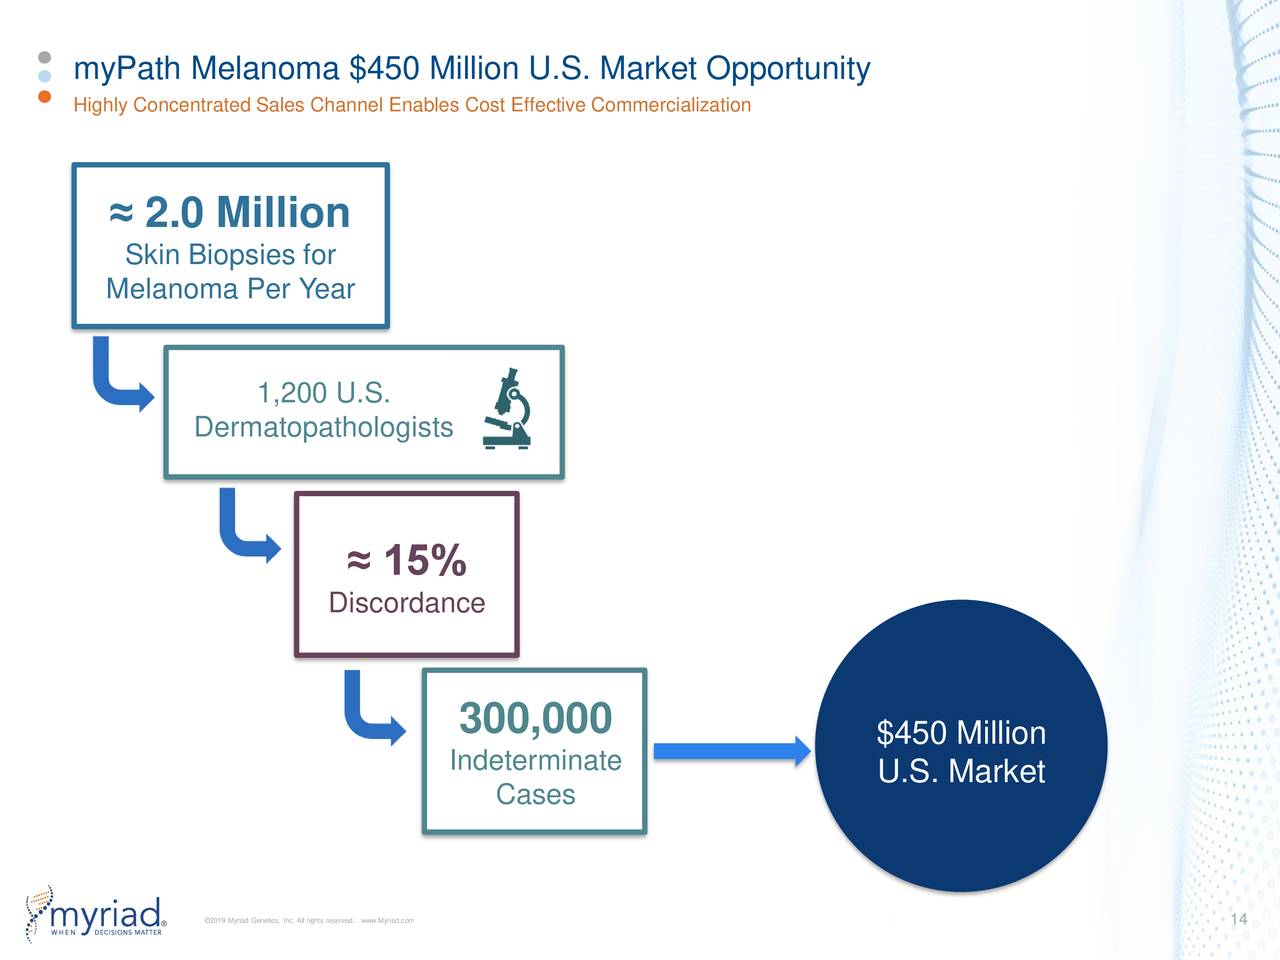 myPath Melanoma $450 Million U.S. Market Opportunity